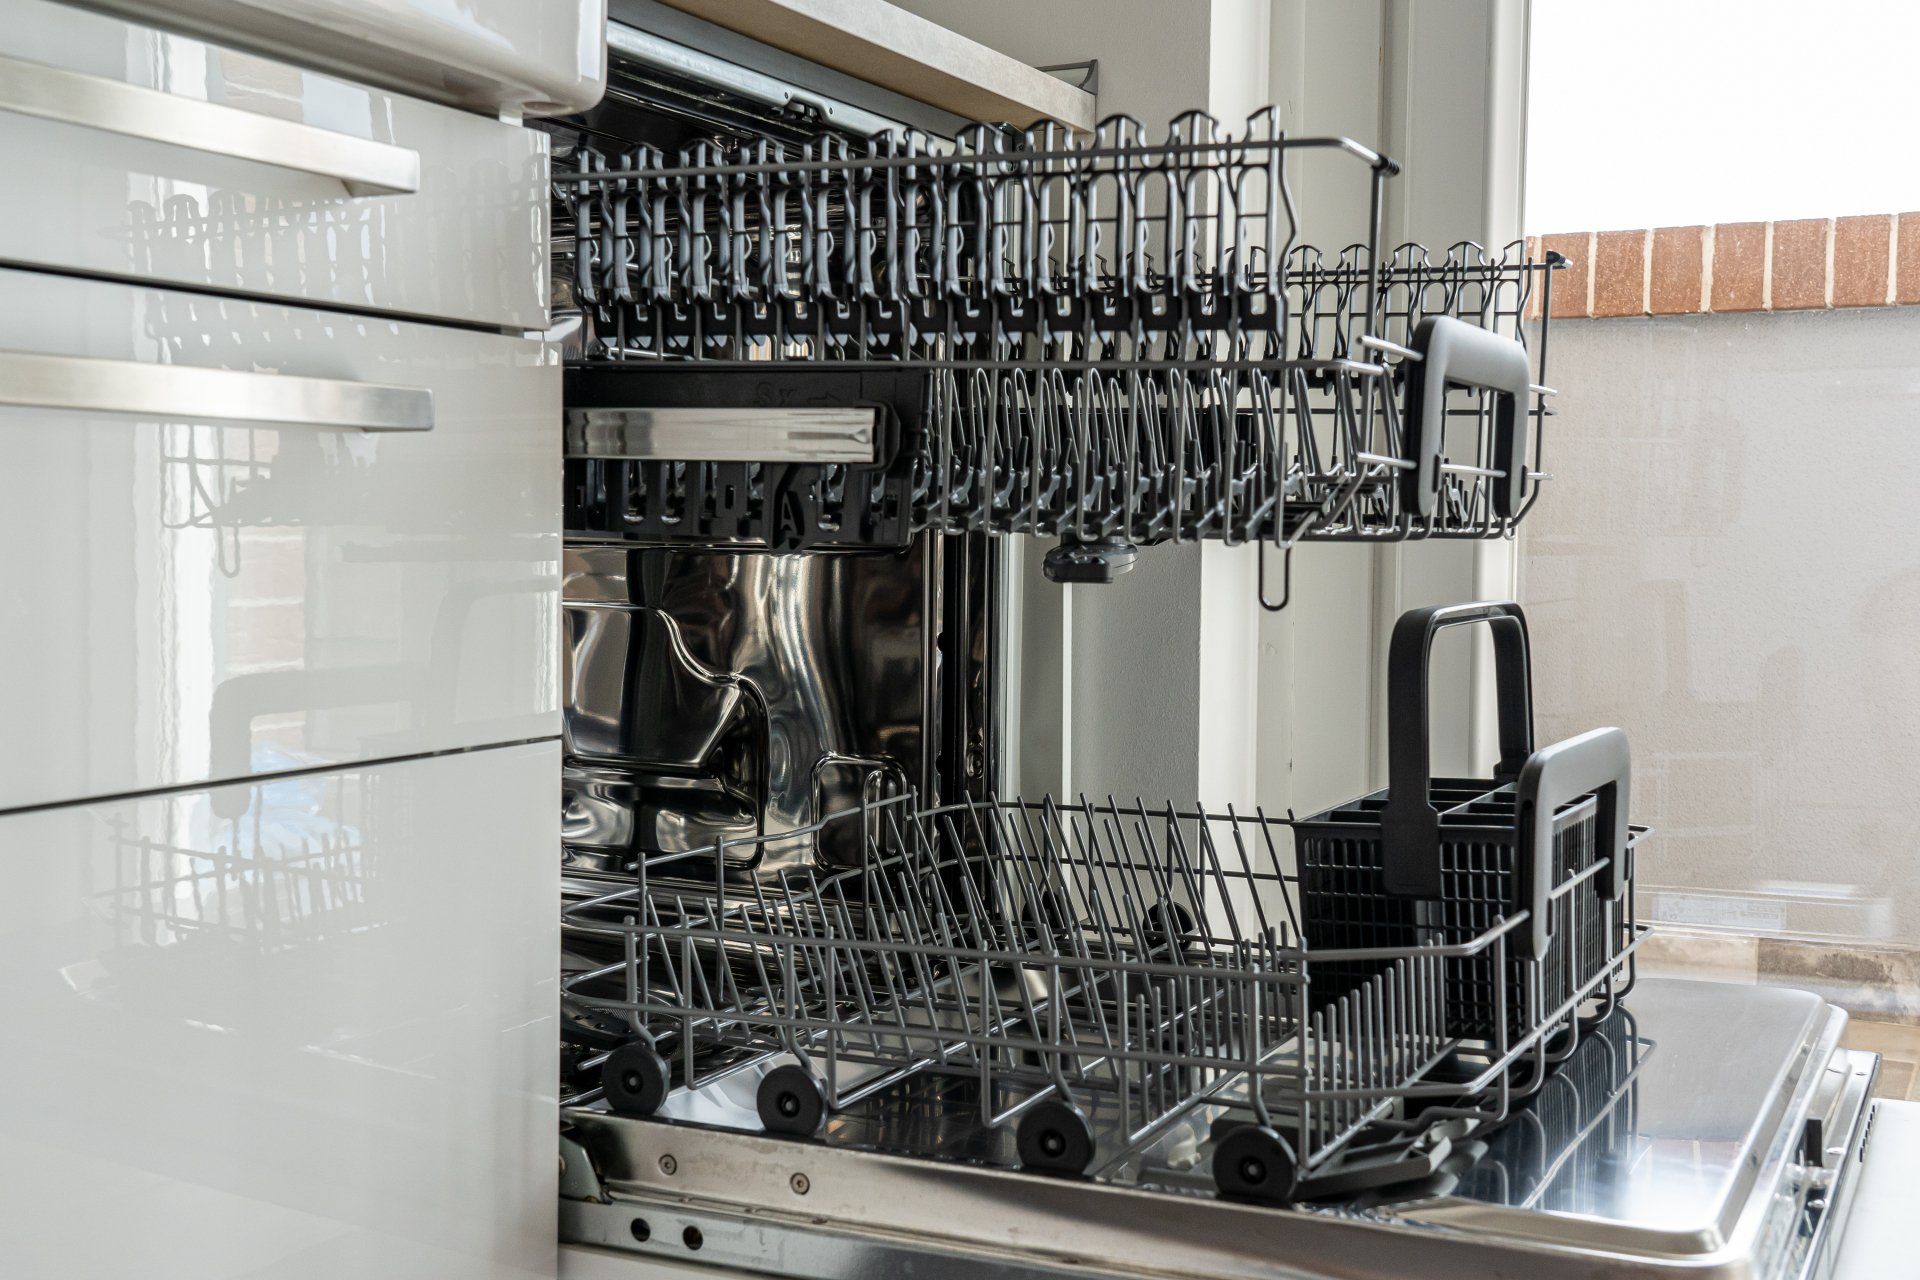 image of open dishwasher